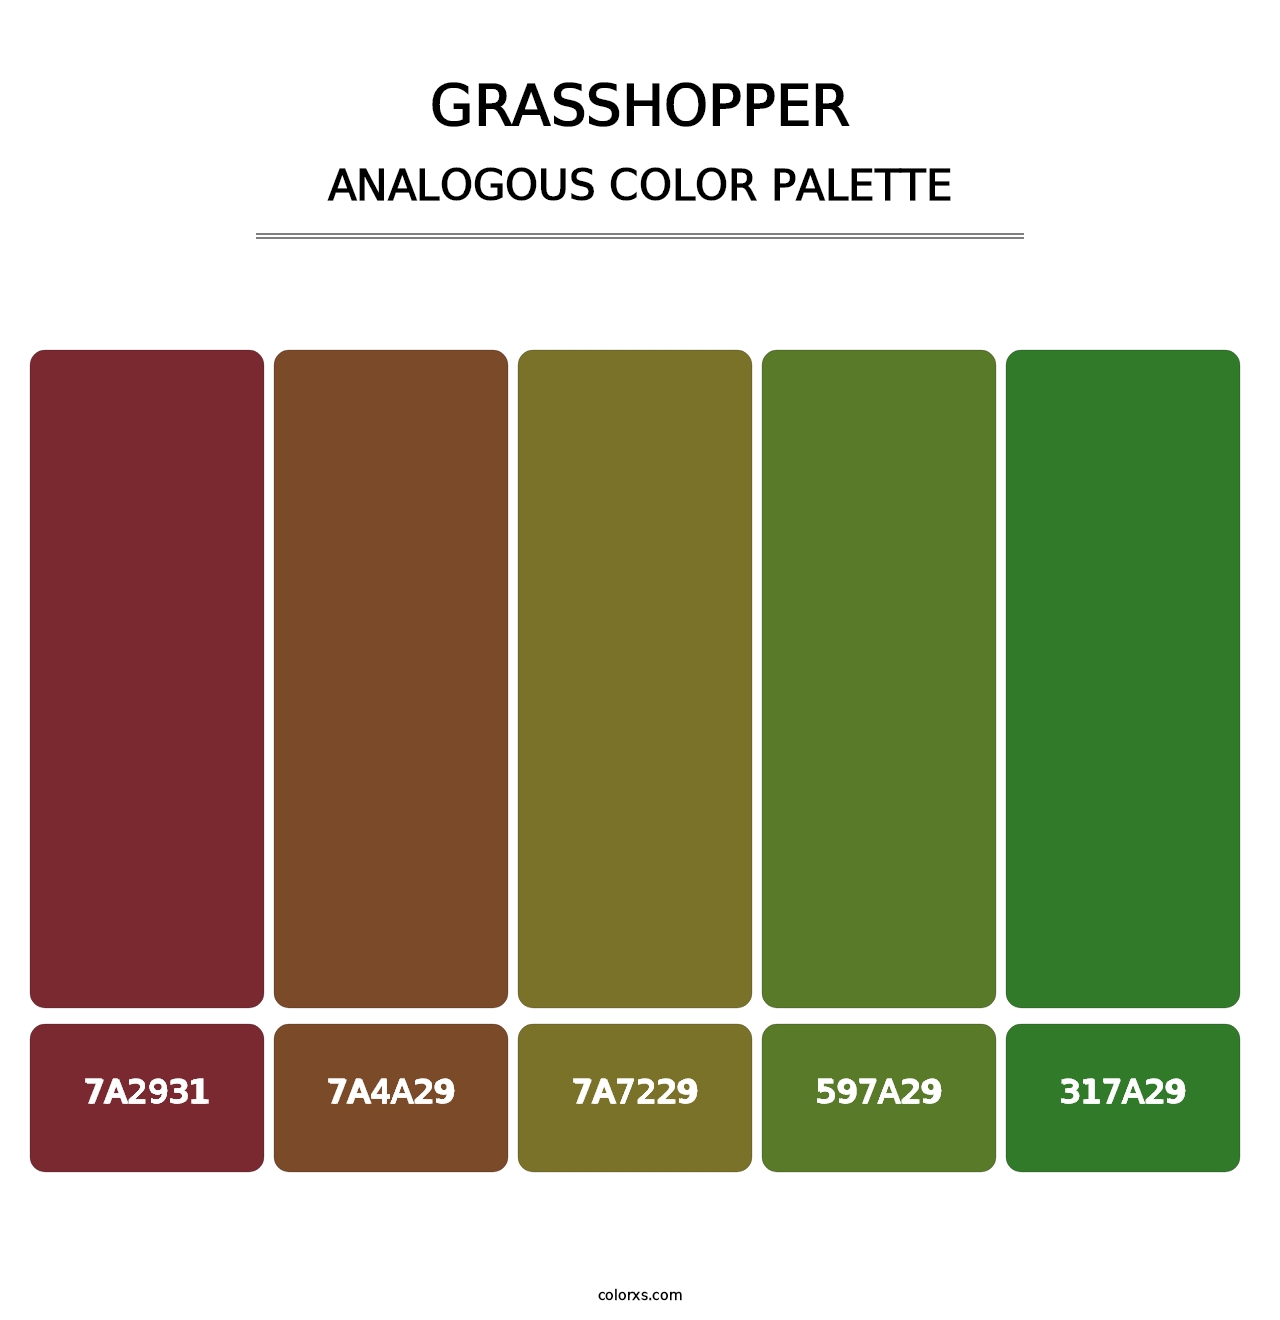 Grasshopper - Analogous Color Palette